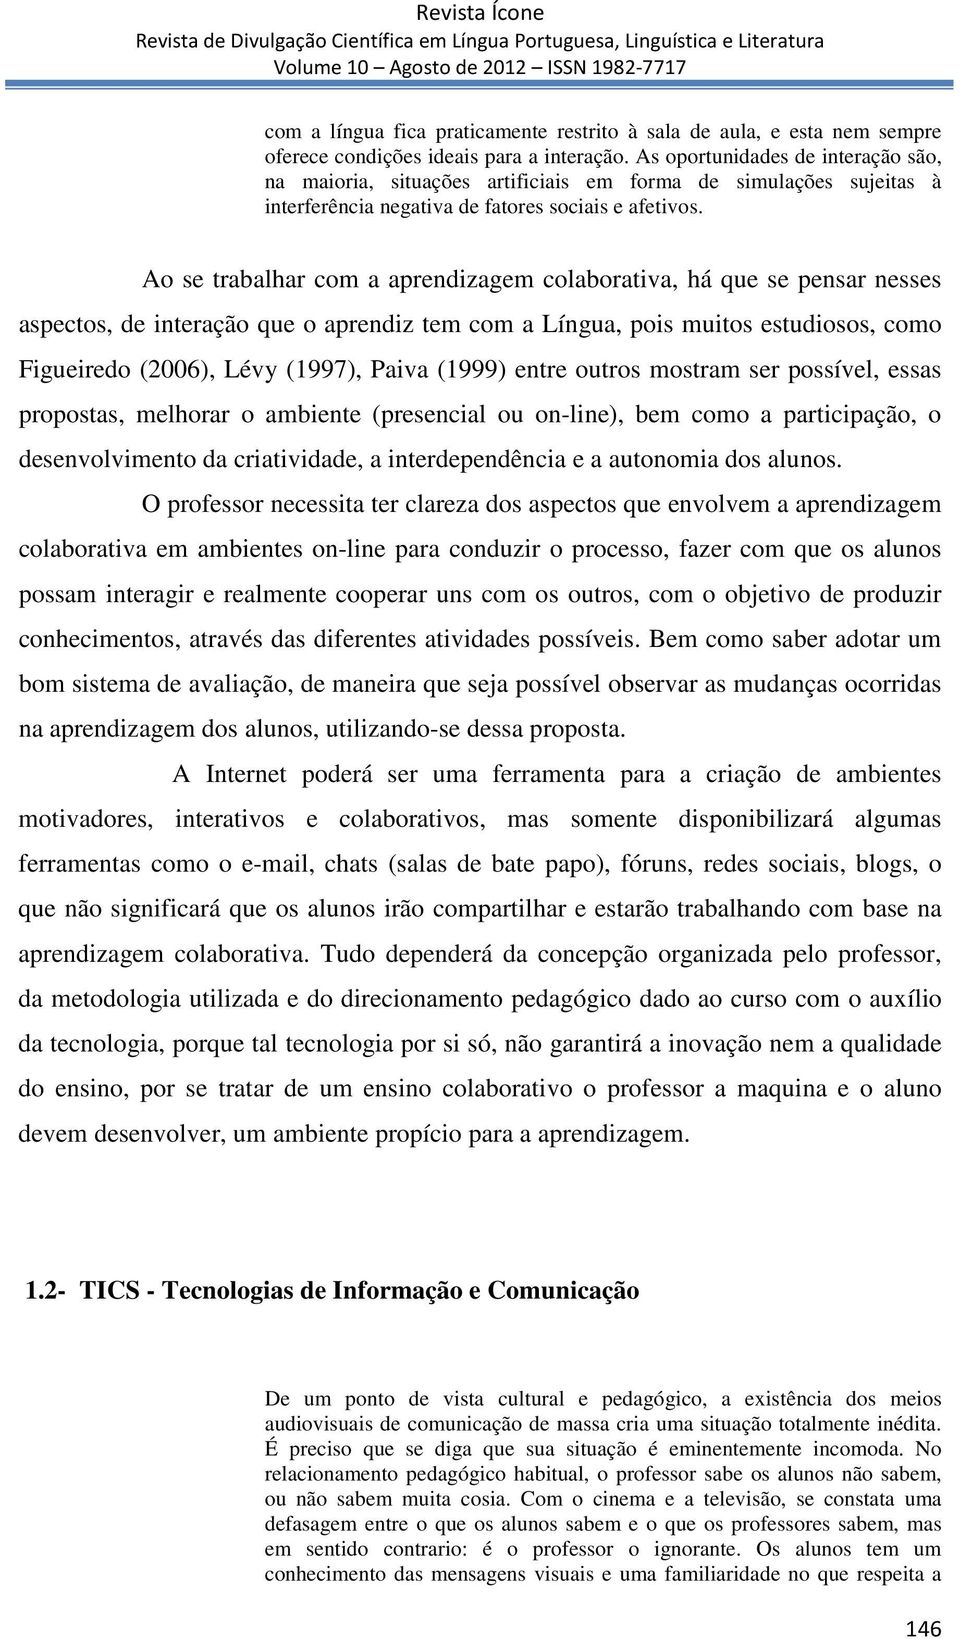 Ao se trabalhar com a aprendizagem colaborativa, há que se pensar nesses aspectos, de interação que o aprendiz tem com a Língua, pois muitos estudiosos, como Figueiredo (2006), Lévy (1997), Paiva